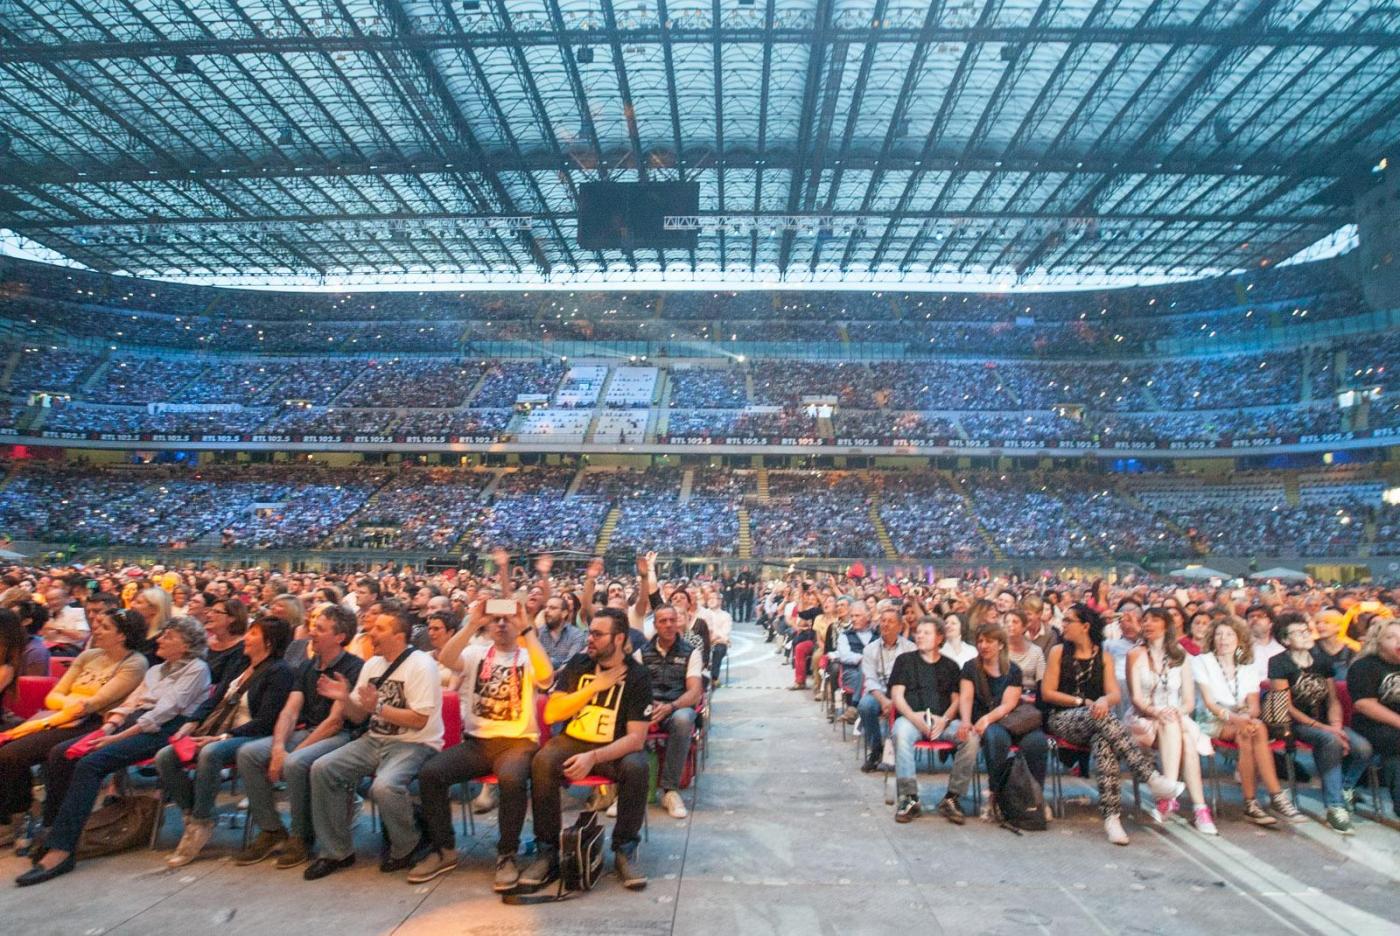 Concerto Pooh Reunion 2016 Stadio Meazza di Milano